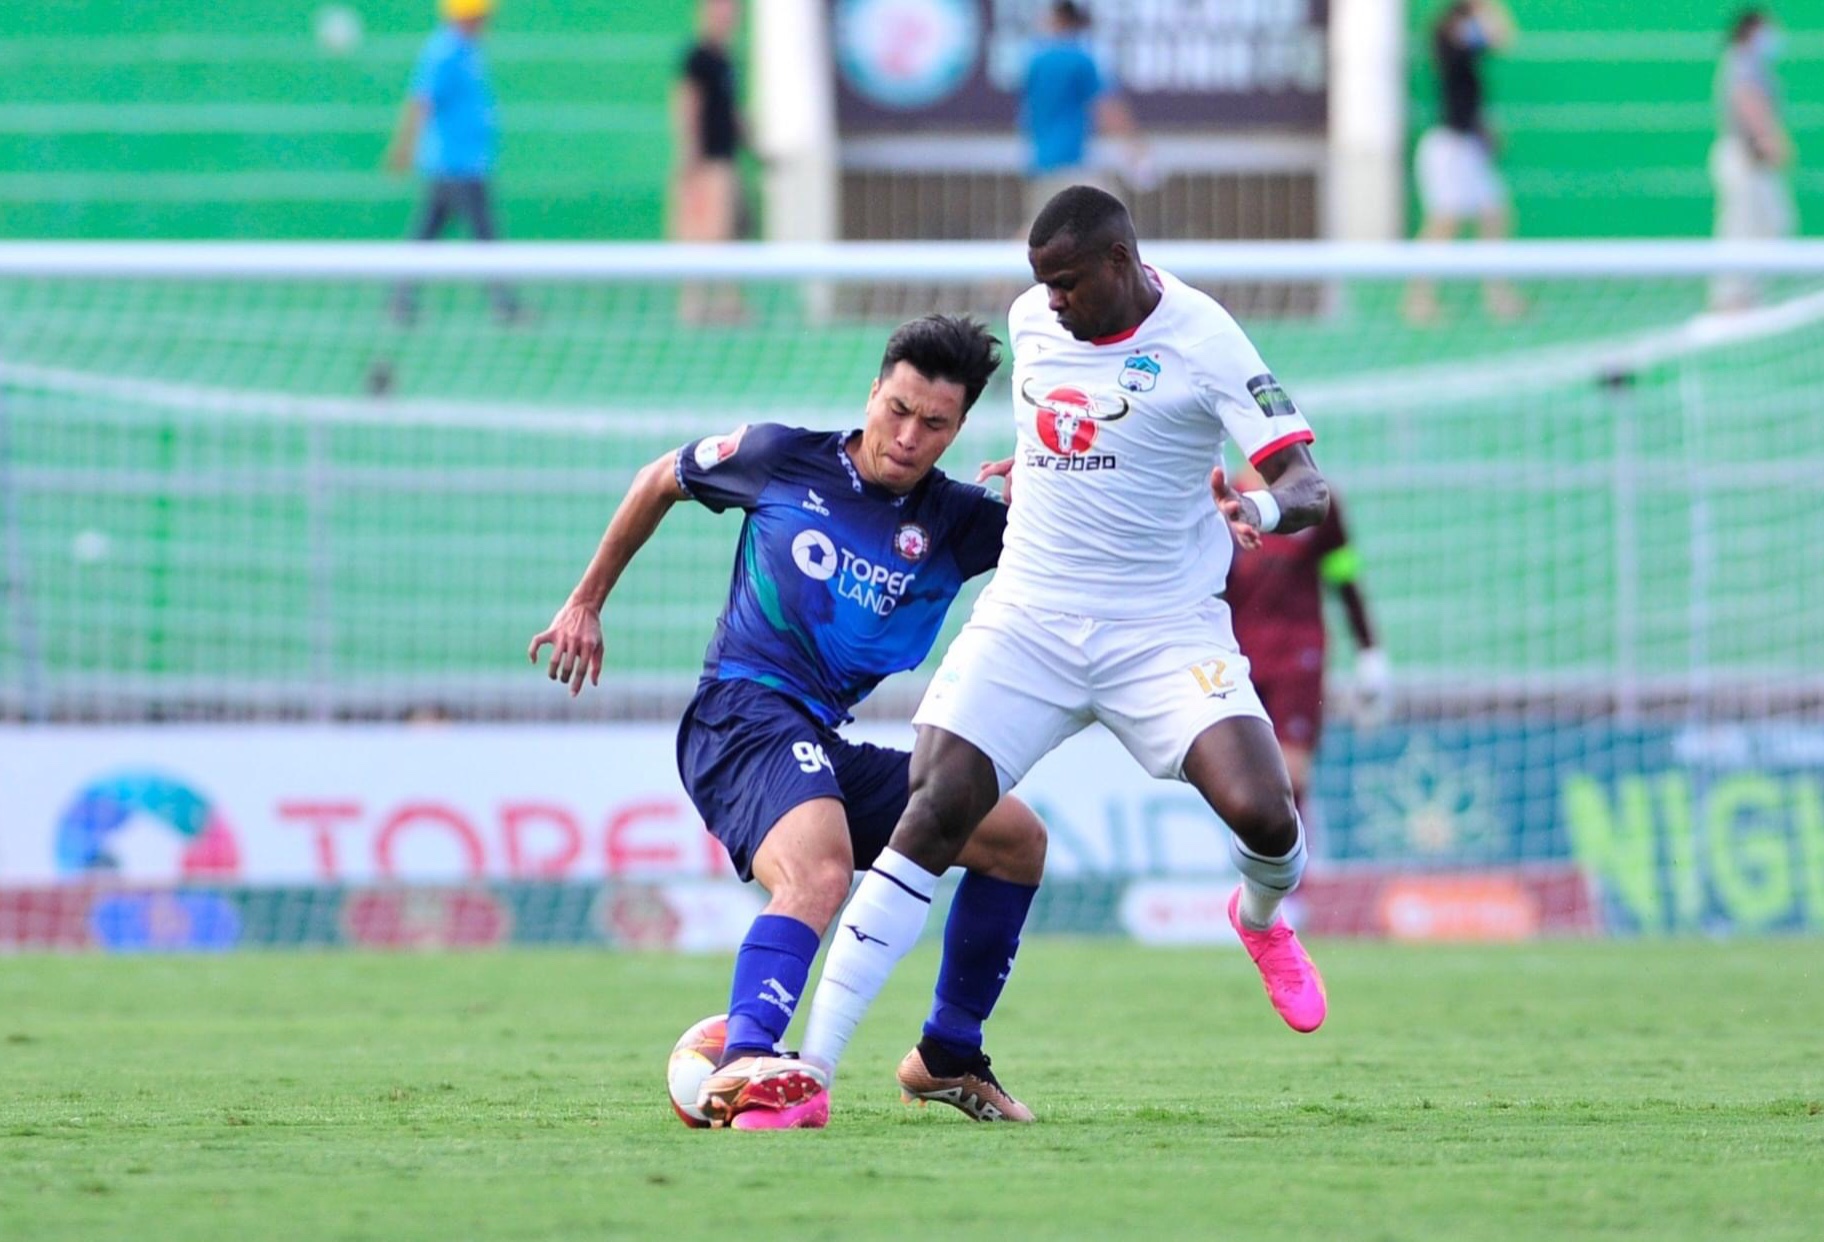 Câu lạc bộ Hoàng Anh Gia Lai (trắng) rơi vào nhóm đua trụ hạng sau trận thua 1-2 trước Bình Định ở vòng 13. Ảnh: Bình Định FC